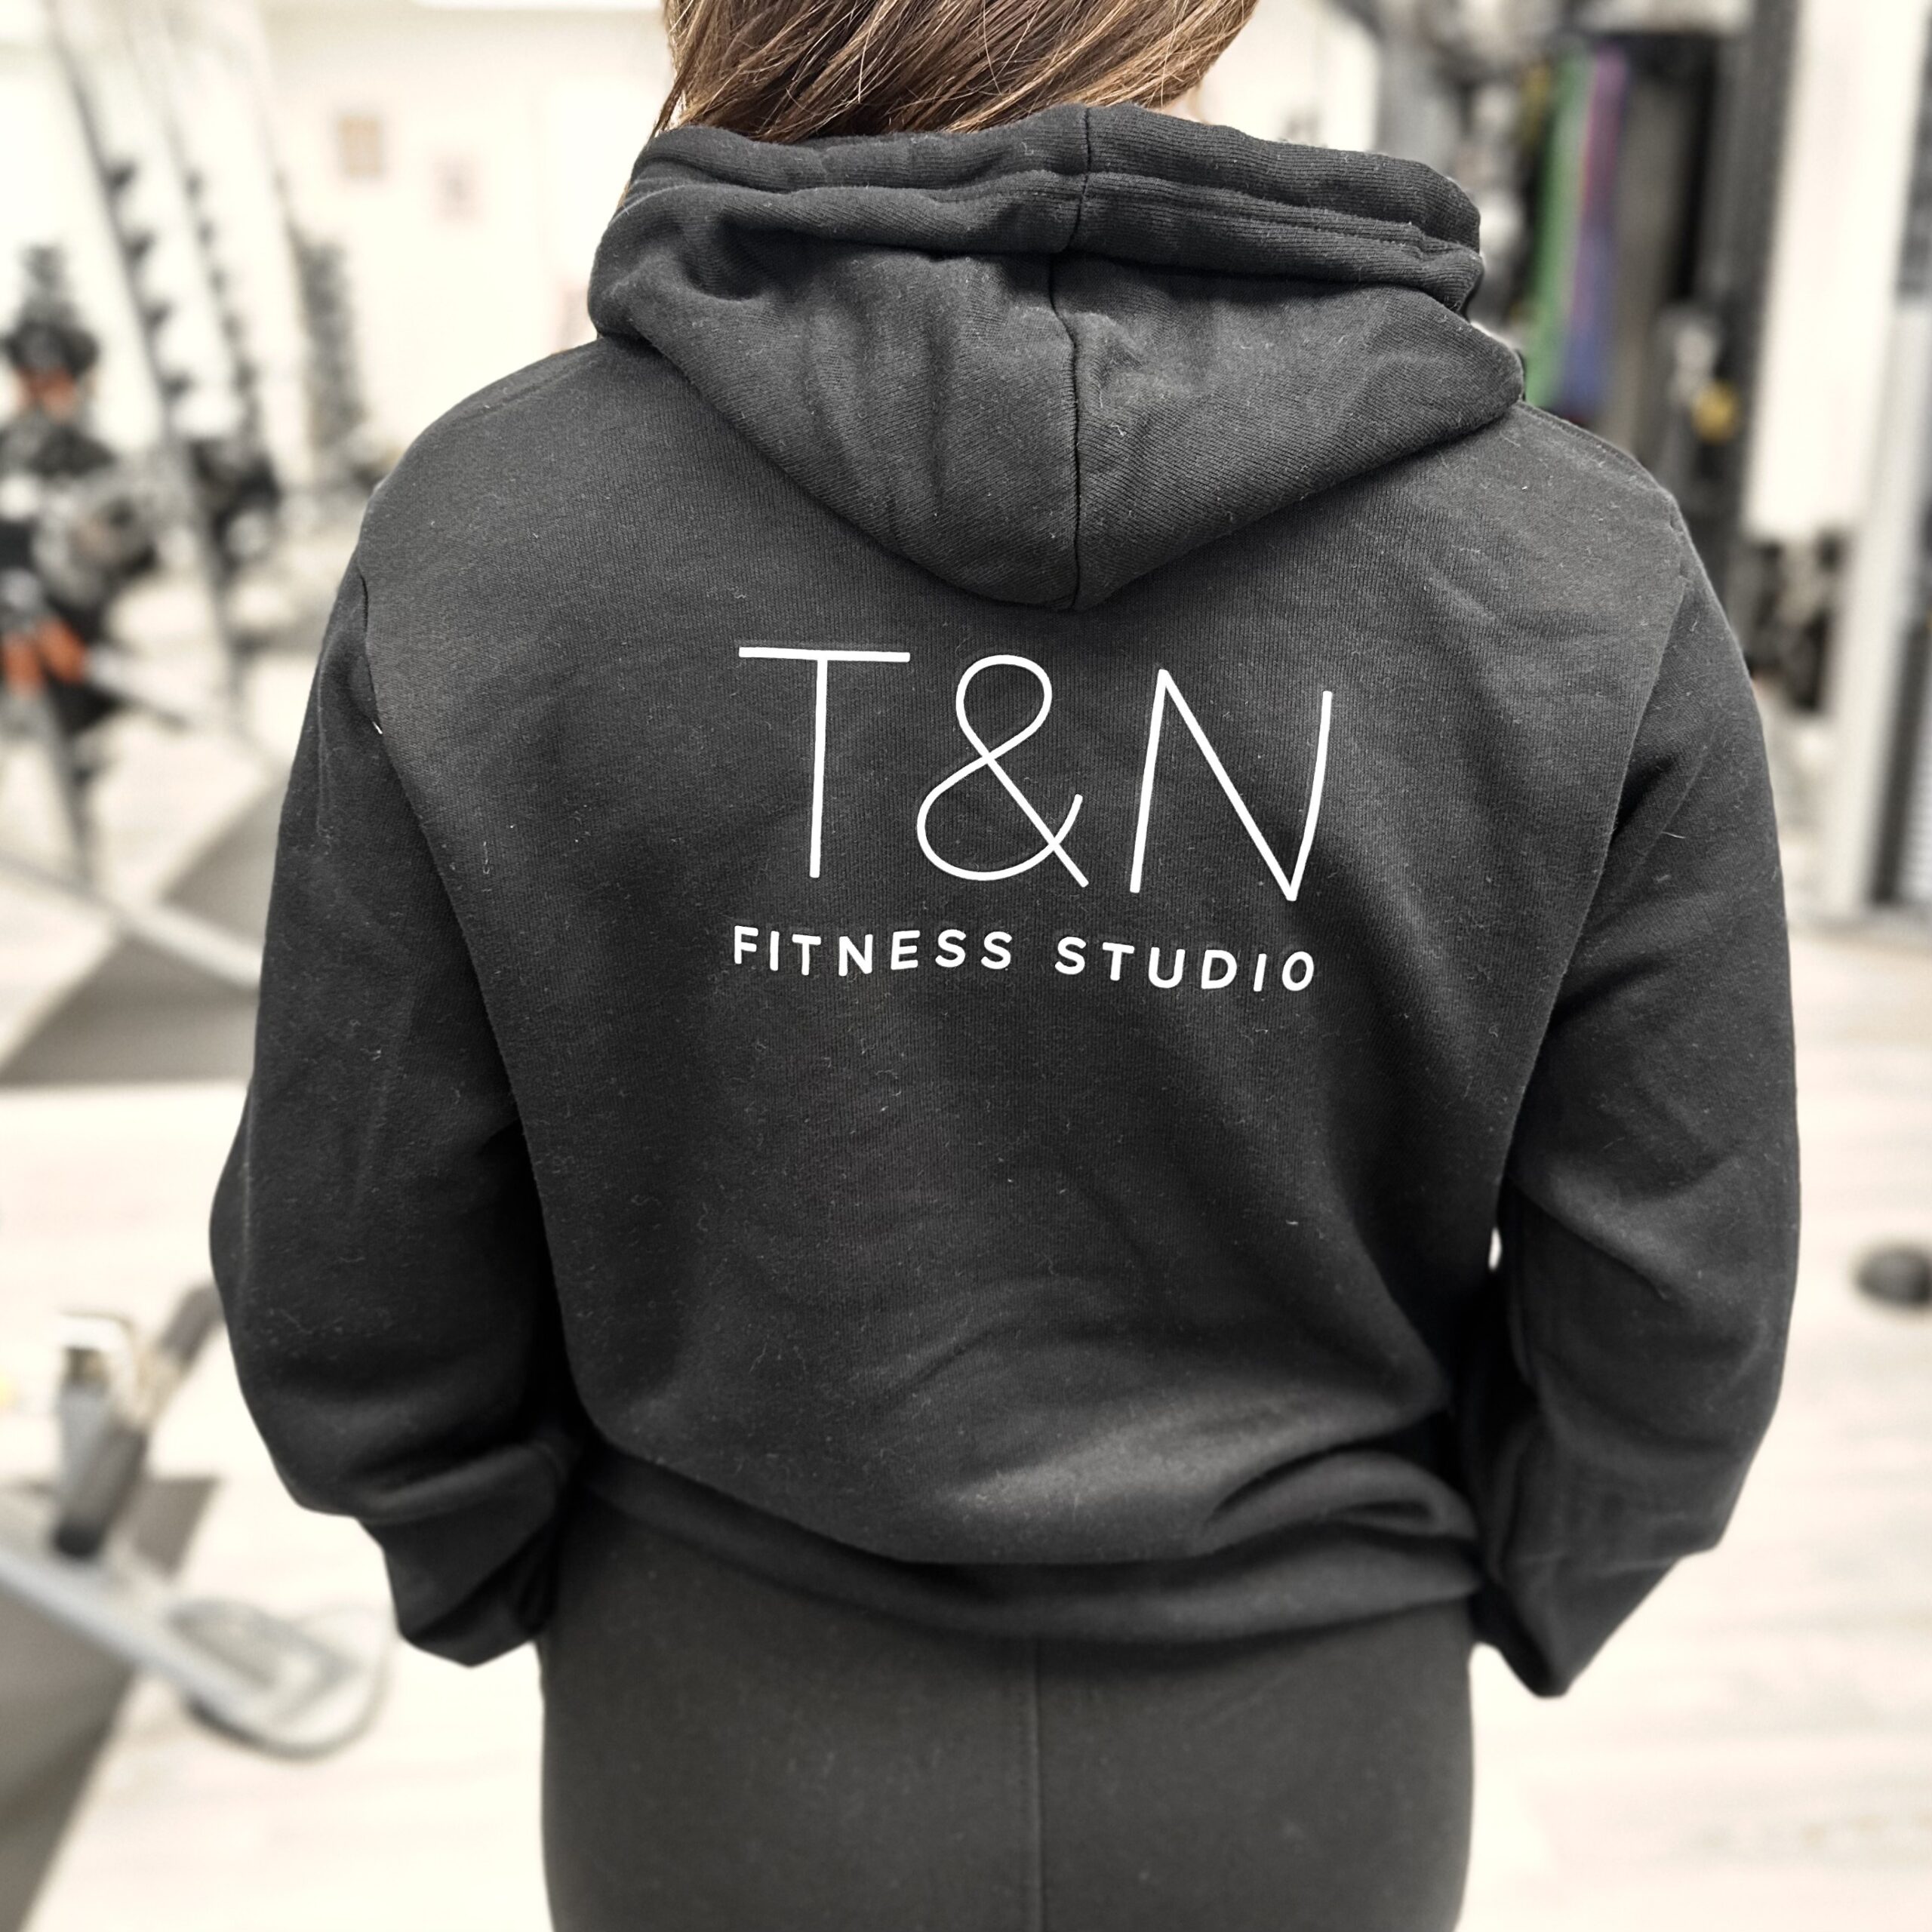 T & n fitness studio merchandise.